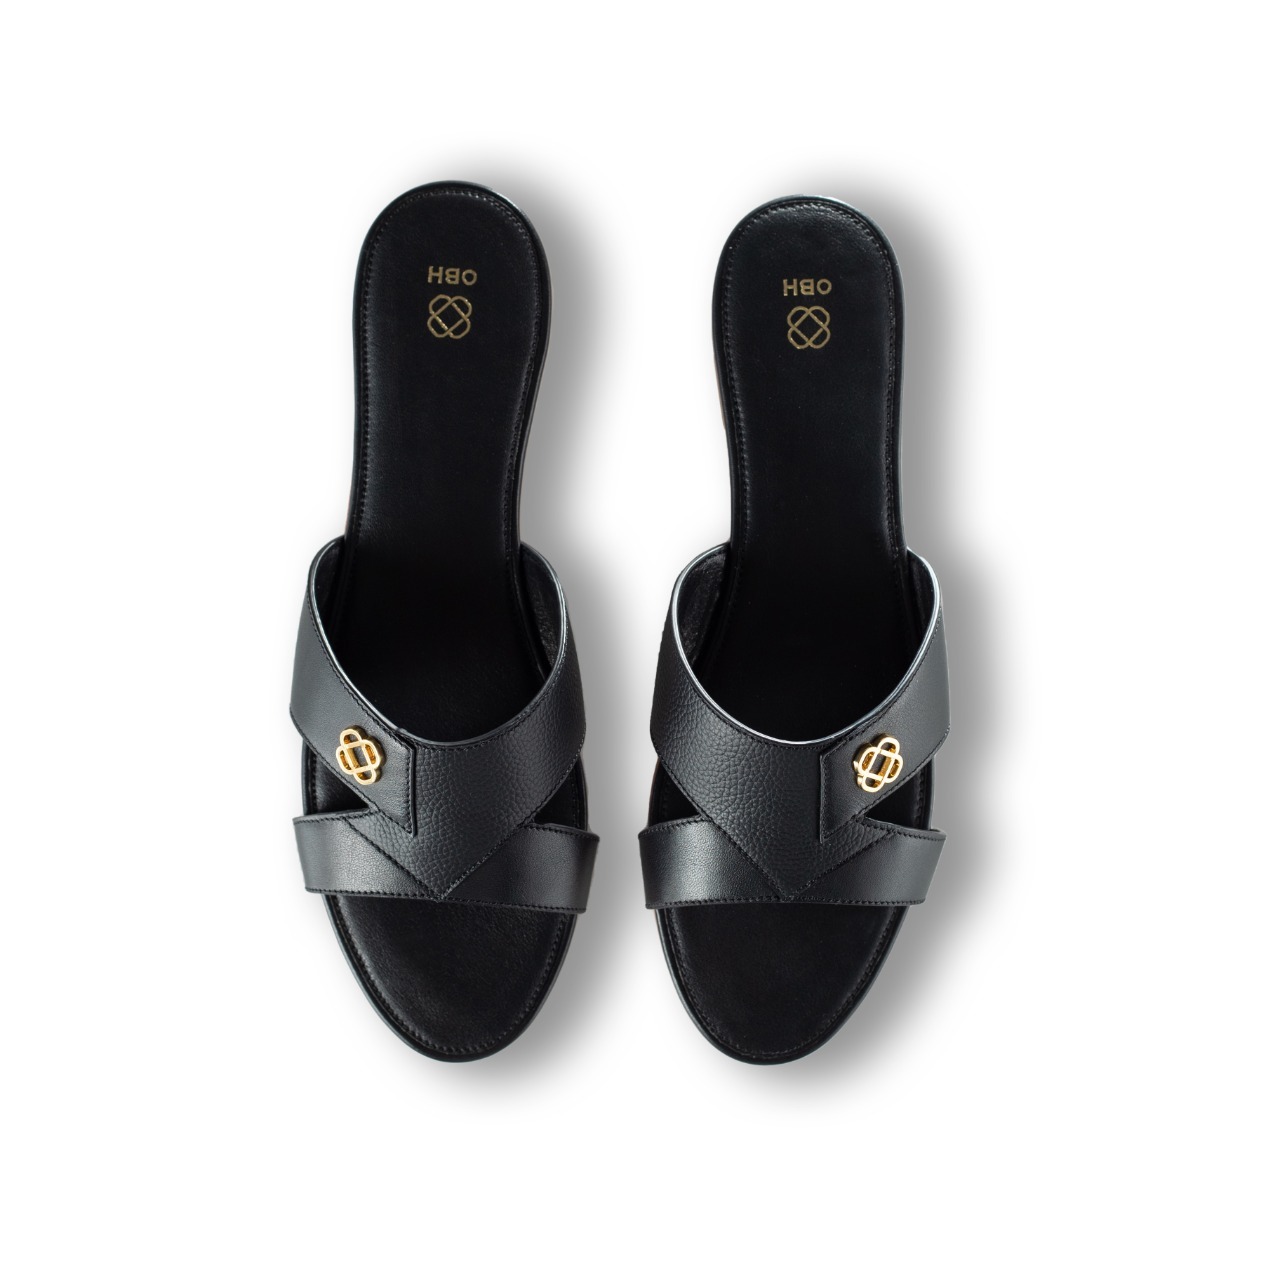 Buy OBH Ladies Sandal 5 Model Black Color Online in UAE | OBH Collection